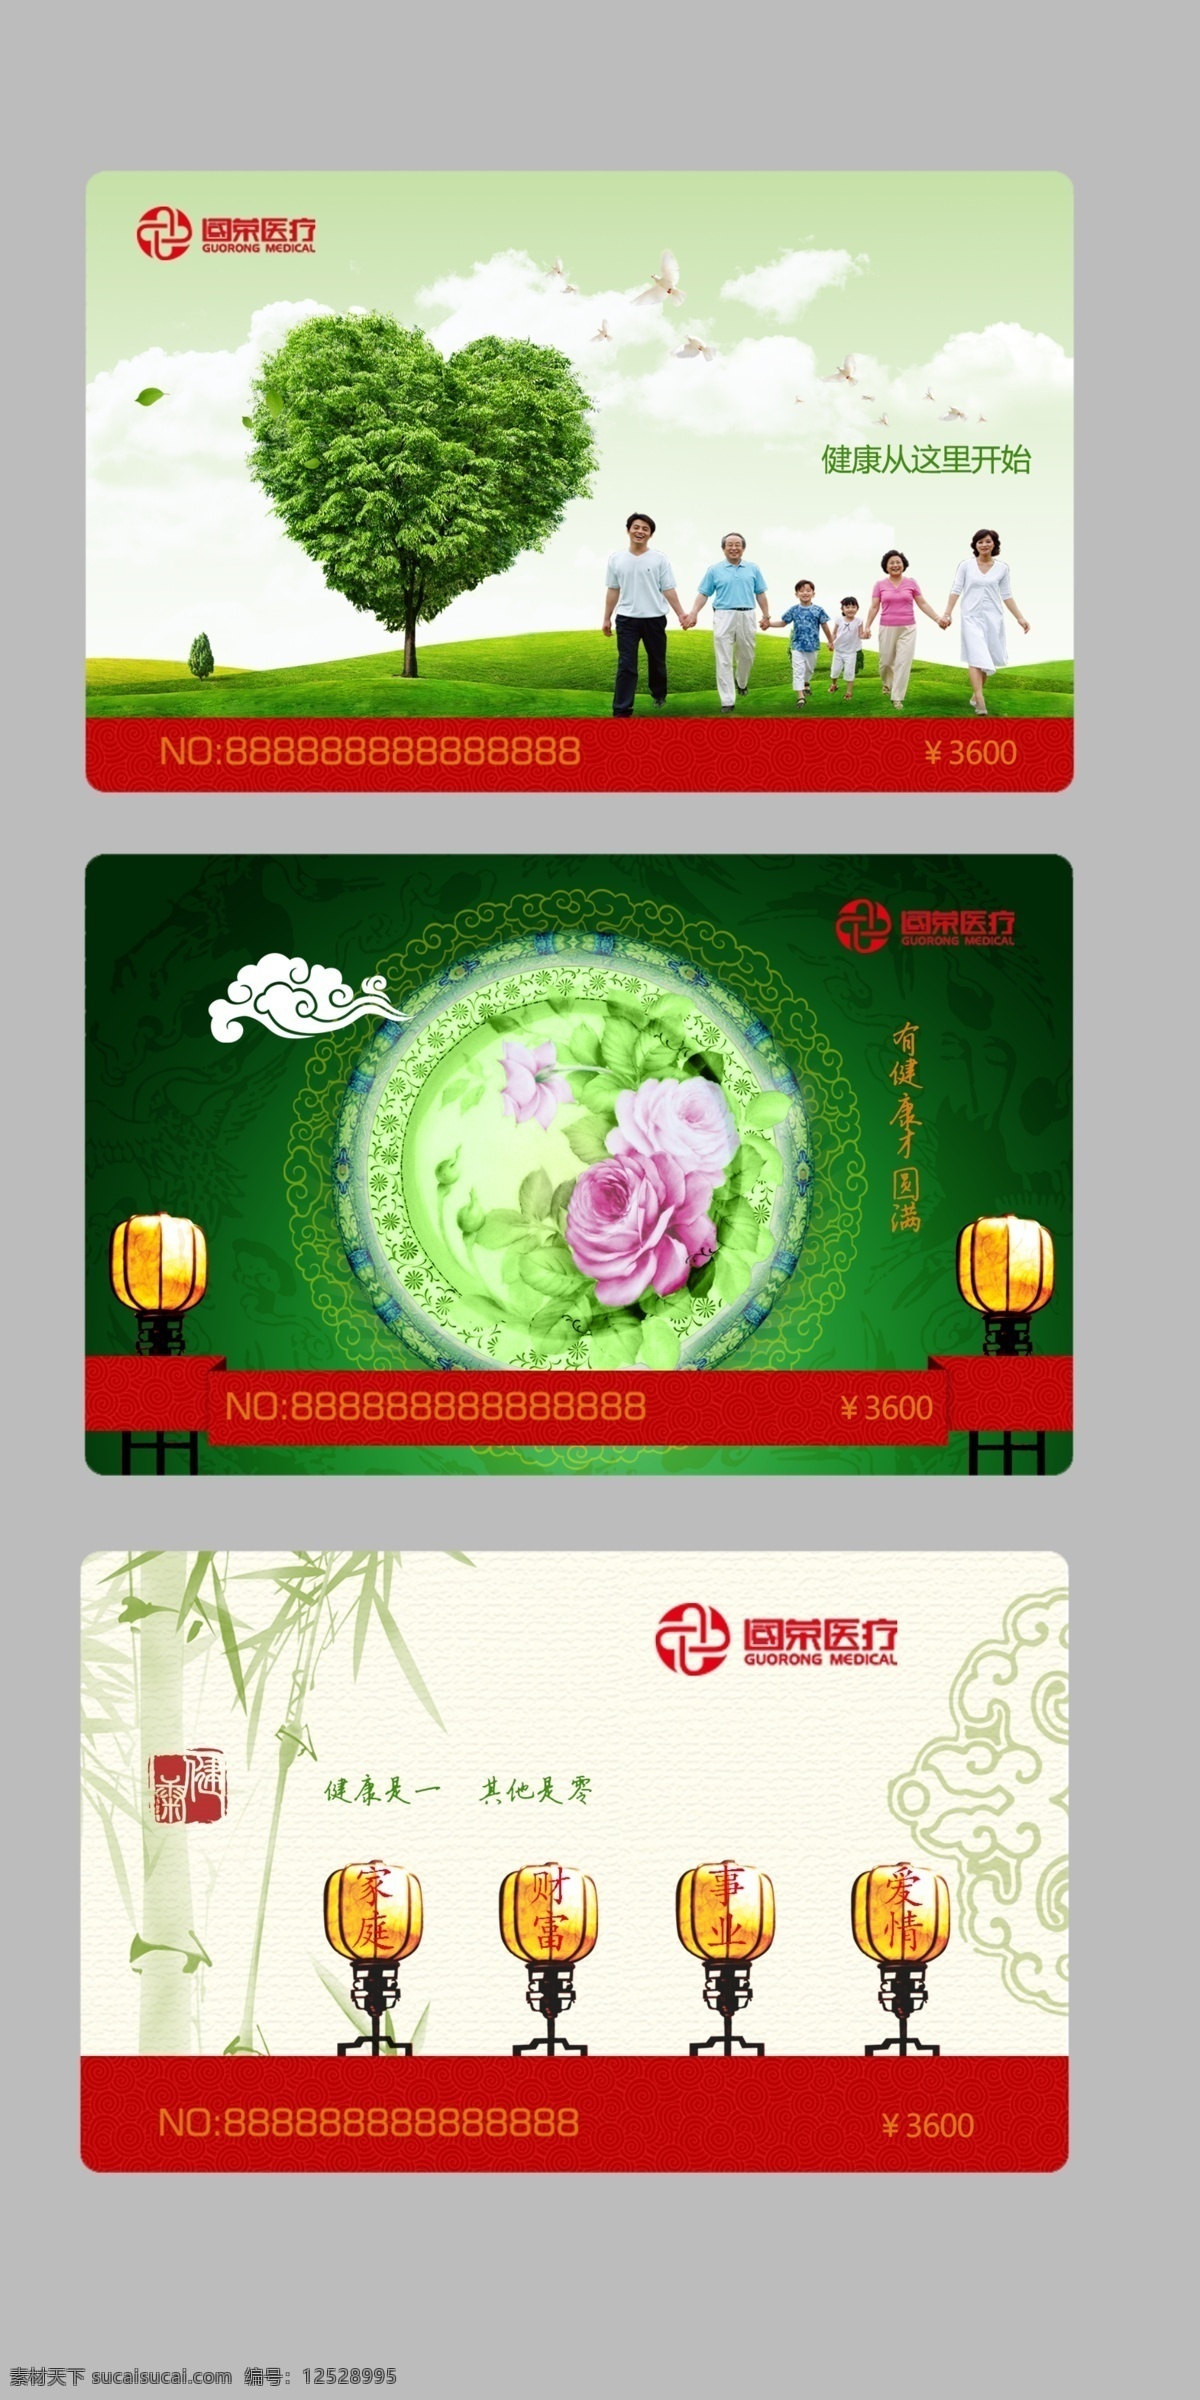 医疗 健康会员卡 健康 会员卡 礼意卡 健康管理 爱心 田园 格子 磁条卡 创意会员卡 灯 花纹 树木 草丛 一家人 名片卡片 广告设计模板 源文件